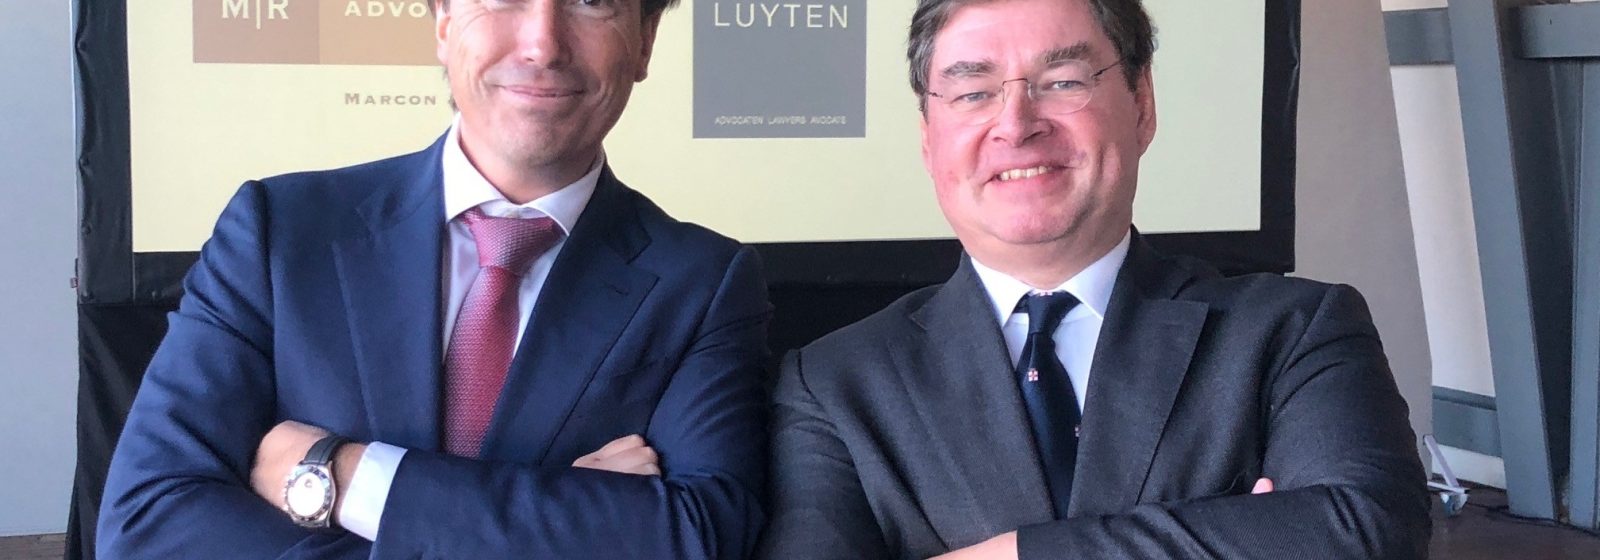 Vincent Fransen (links) en Taco van der Valk als voorzitters van de Belgische en Nederlandse verenigingen voor Zeerecht